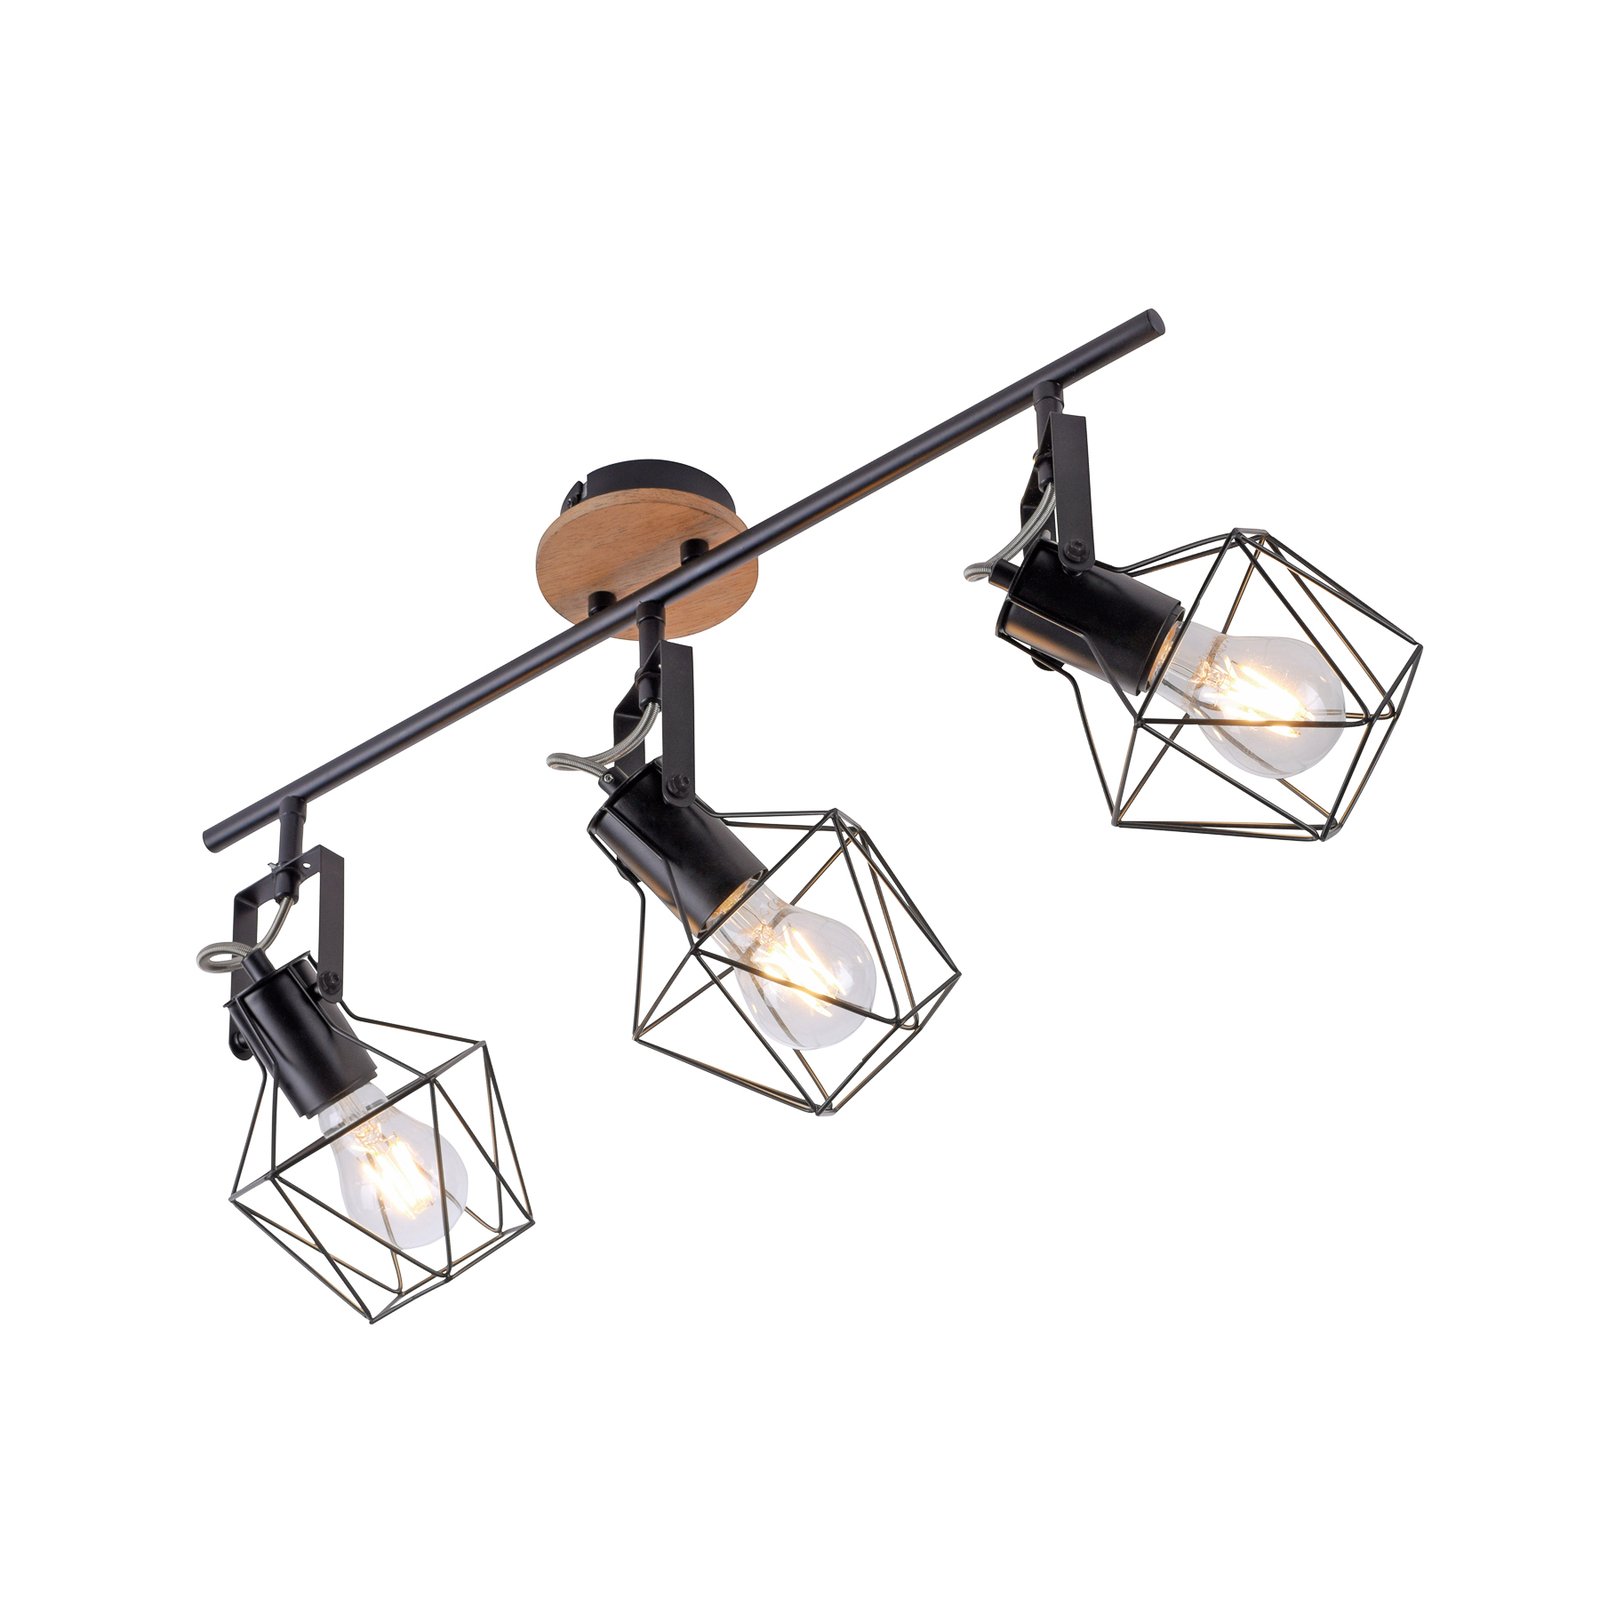 Ceiling lamp Jaro adjustable black/wood 3-bulb